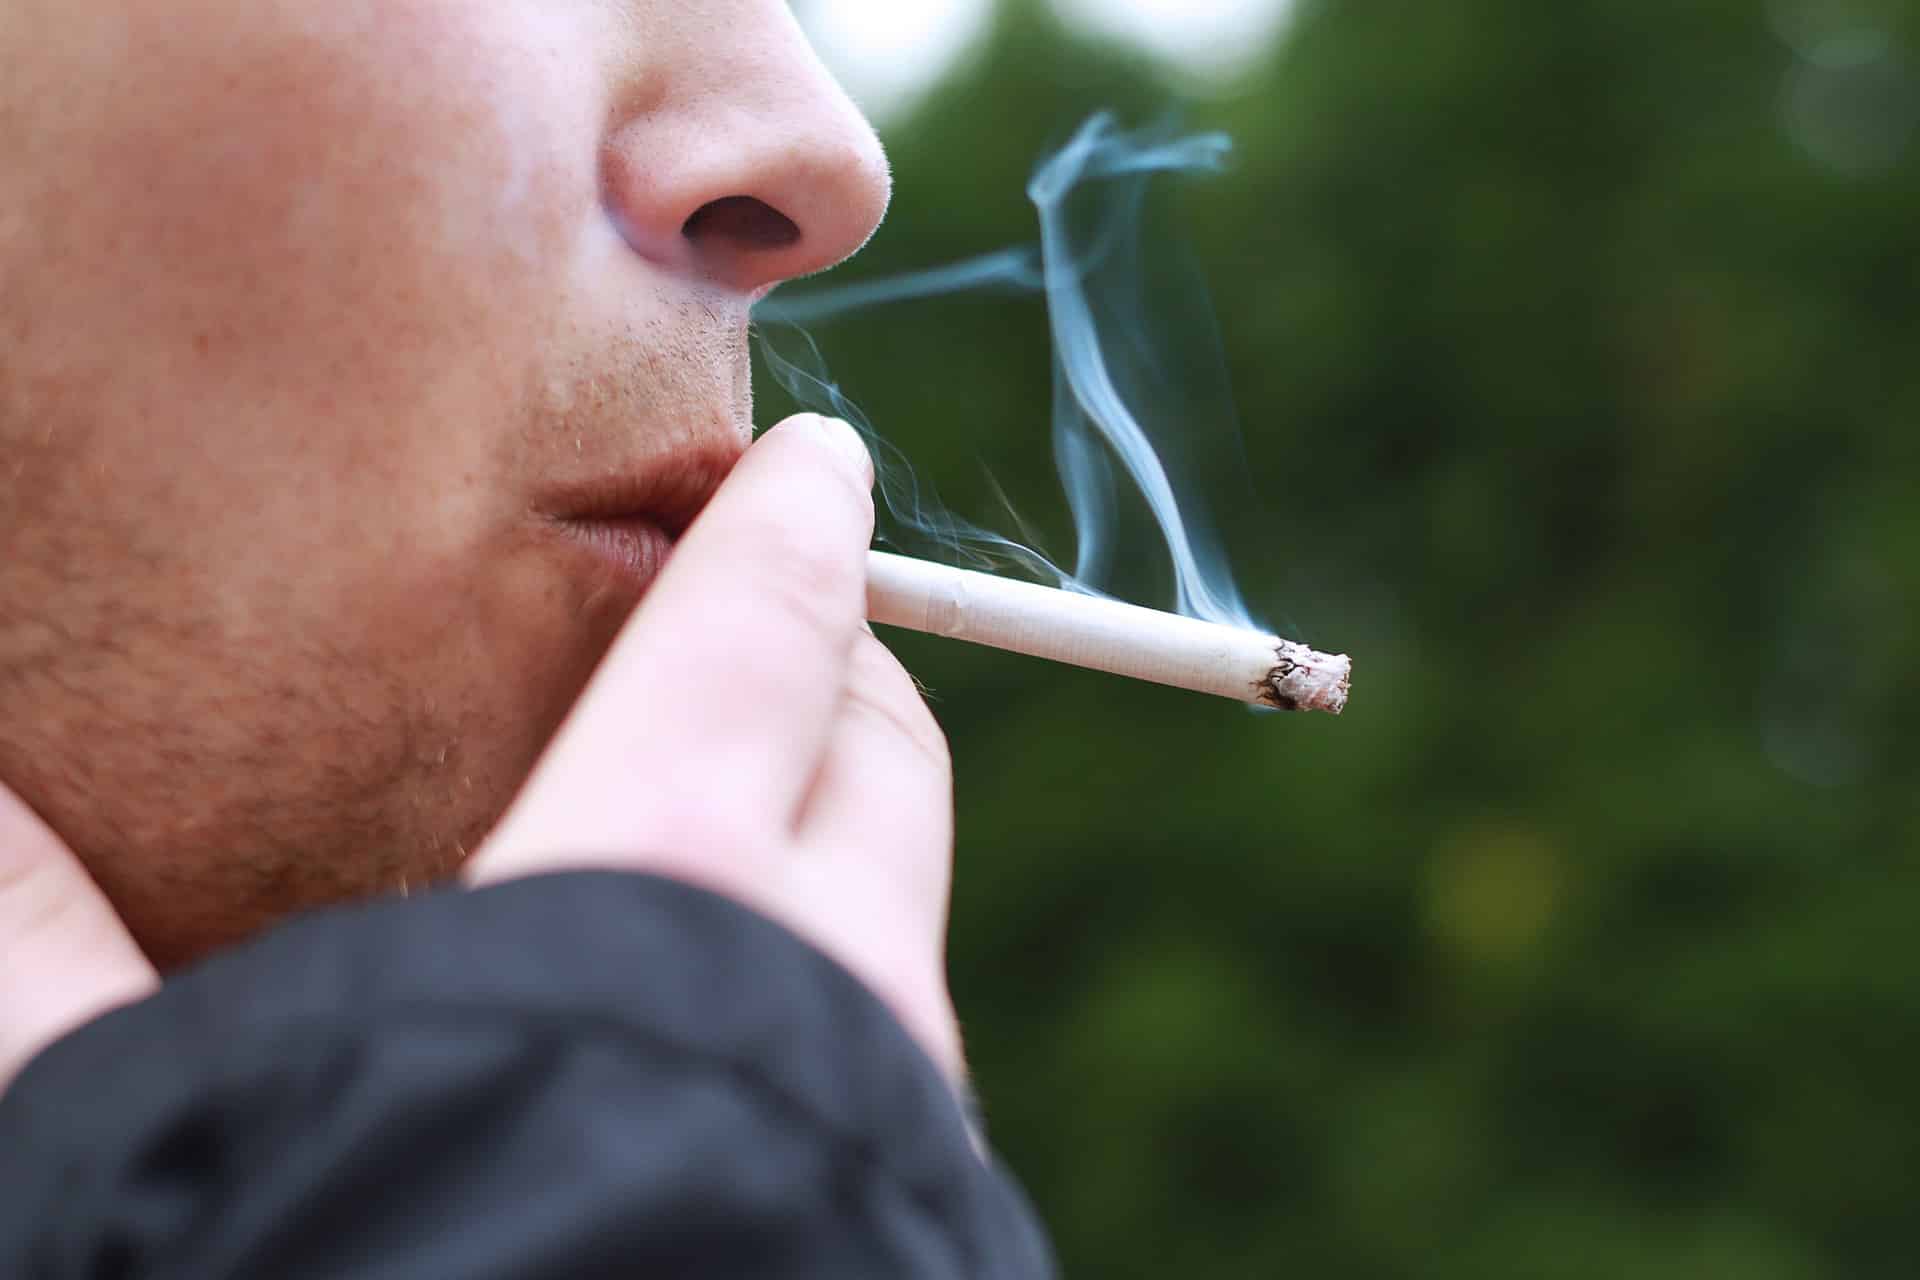 Se schimbă legea! Amenzi colosale pentru românii care fumează în public. Cine este vizat